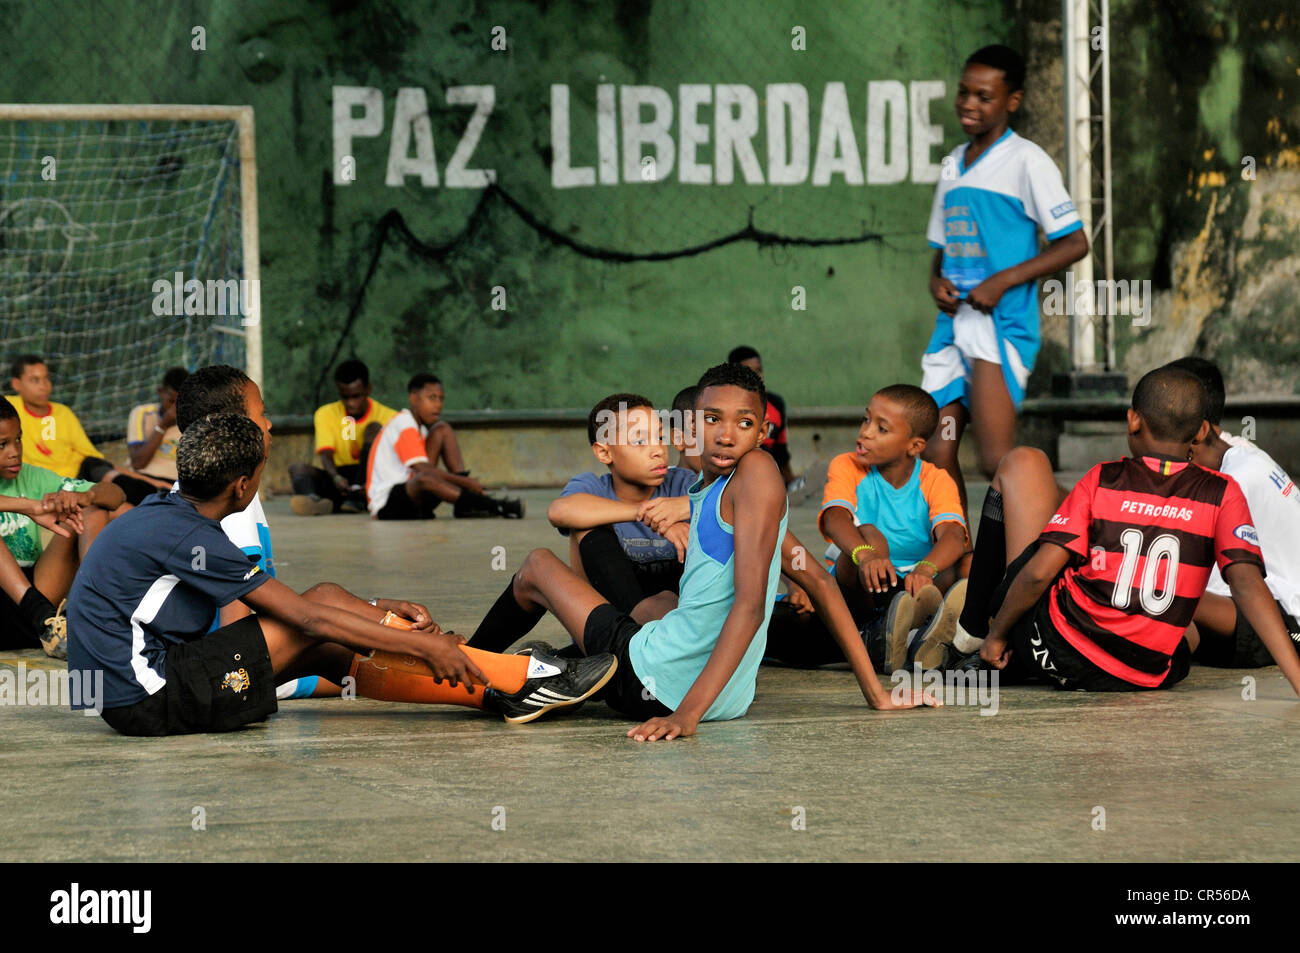 Gli adolescenti e i bambini in un parco giochi, a parete con caratteri "Paz Liberdade', Portoghese per 'pace libertà' sul retro Foto Stock